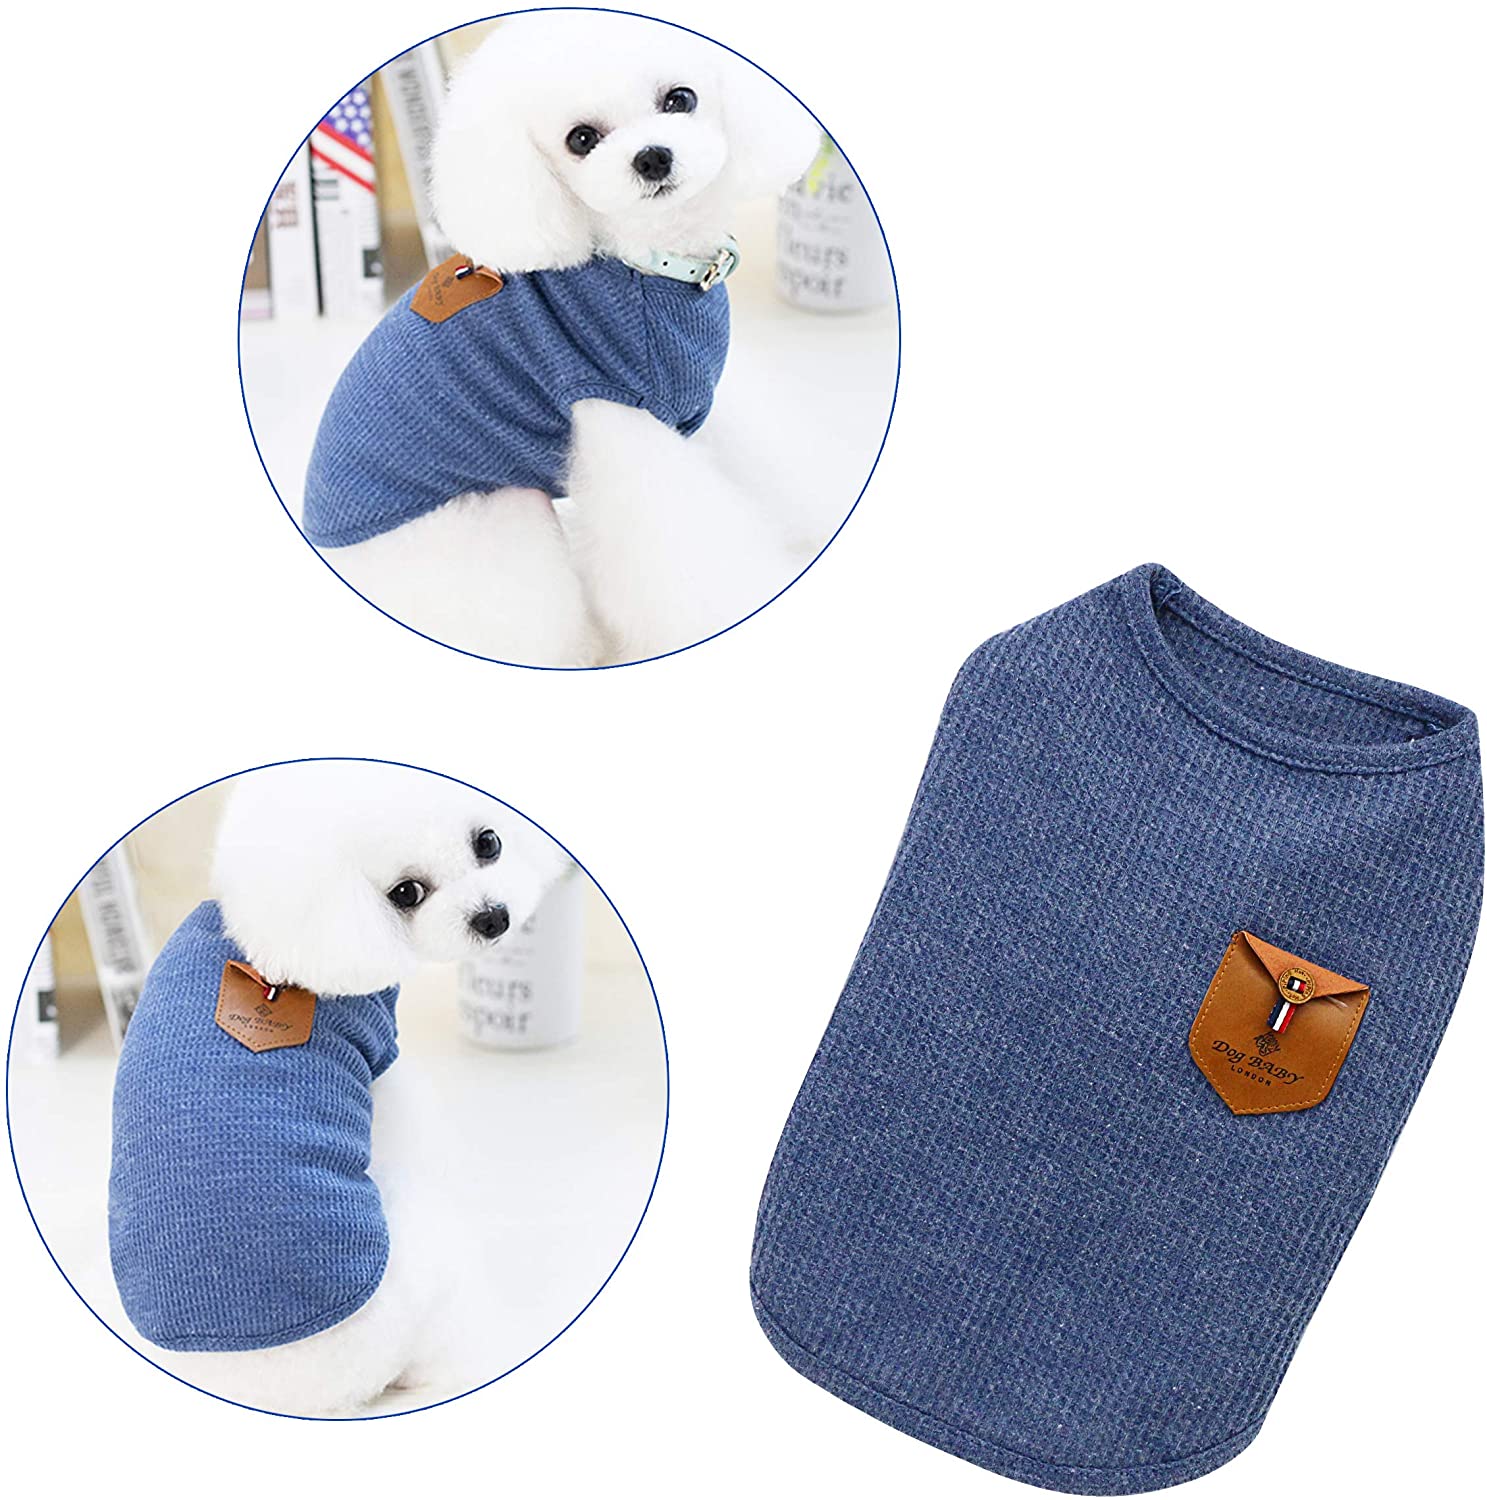  YAODHAOD Camiseta Minimalista para Perros, Ropa para Perros, Azul y Gris, 100% Algodón, para Mini Perros, Perros Pequeños y Gatos (2 Paquetes) (S-Puppy por uno o Dos Meses, Azul y Gris) 